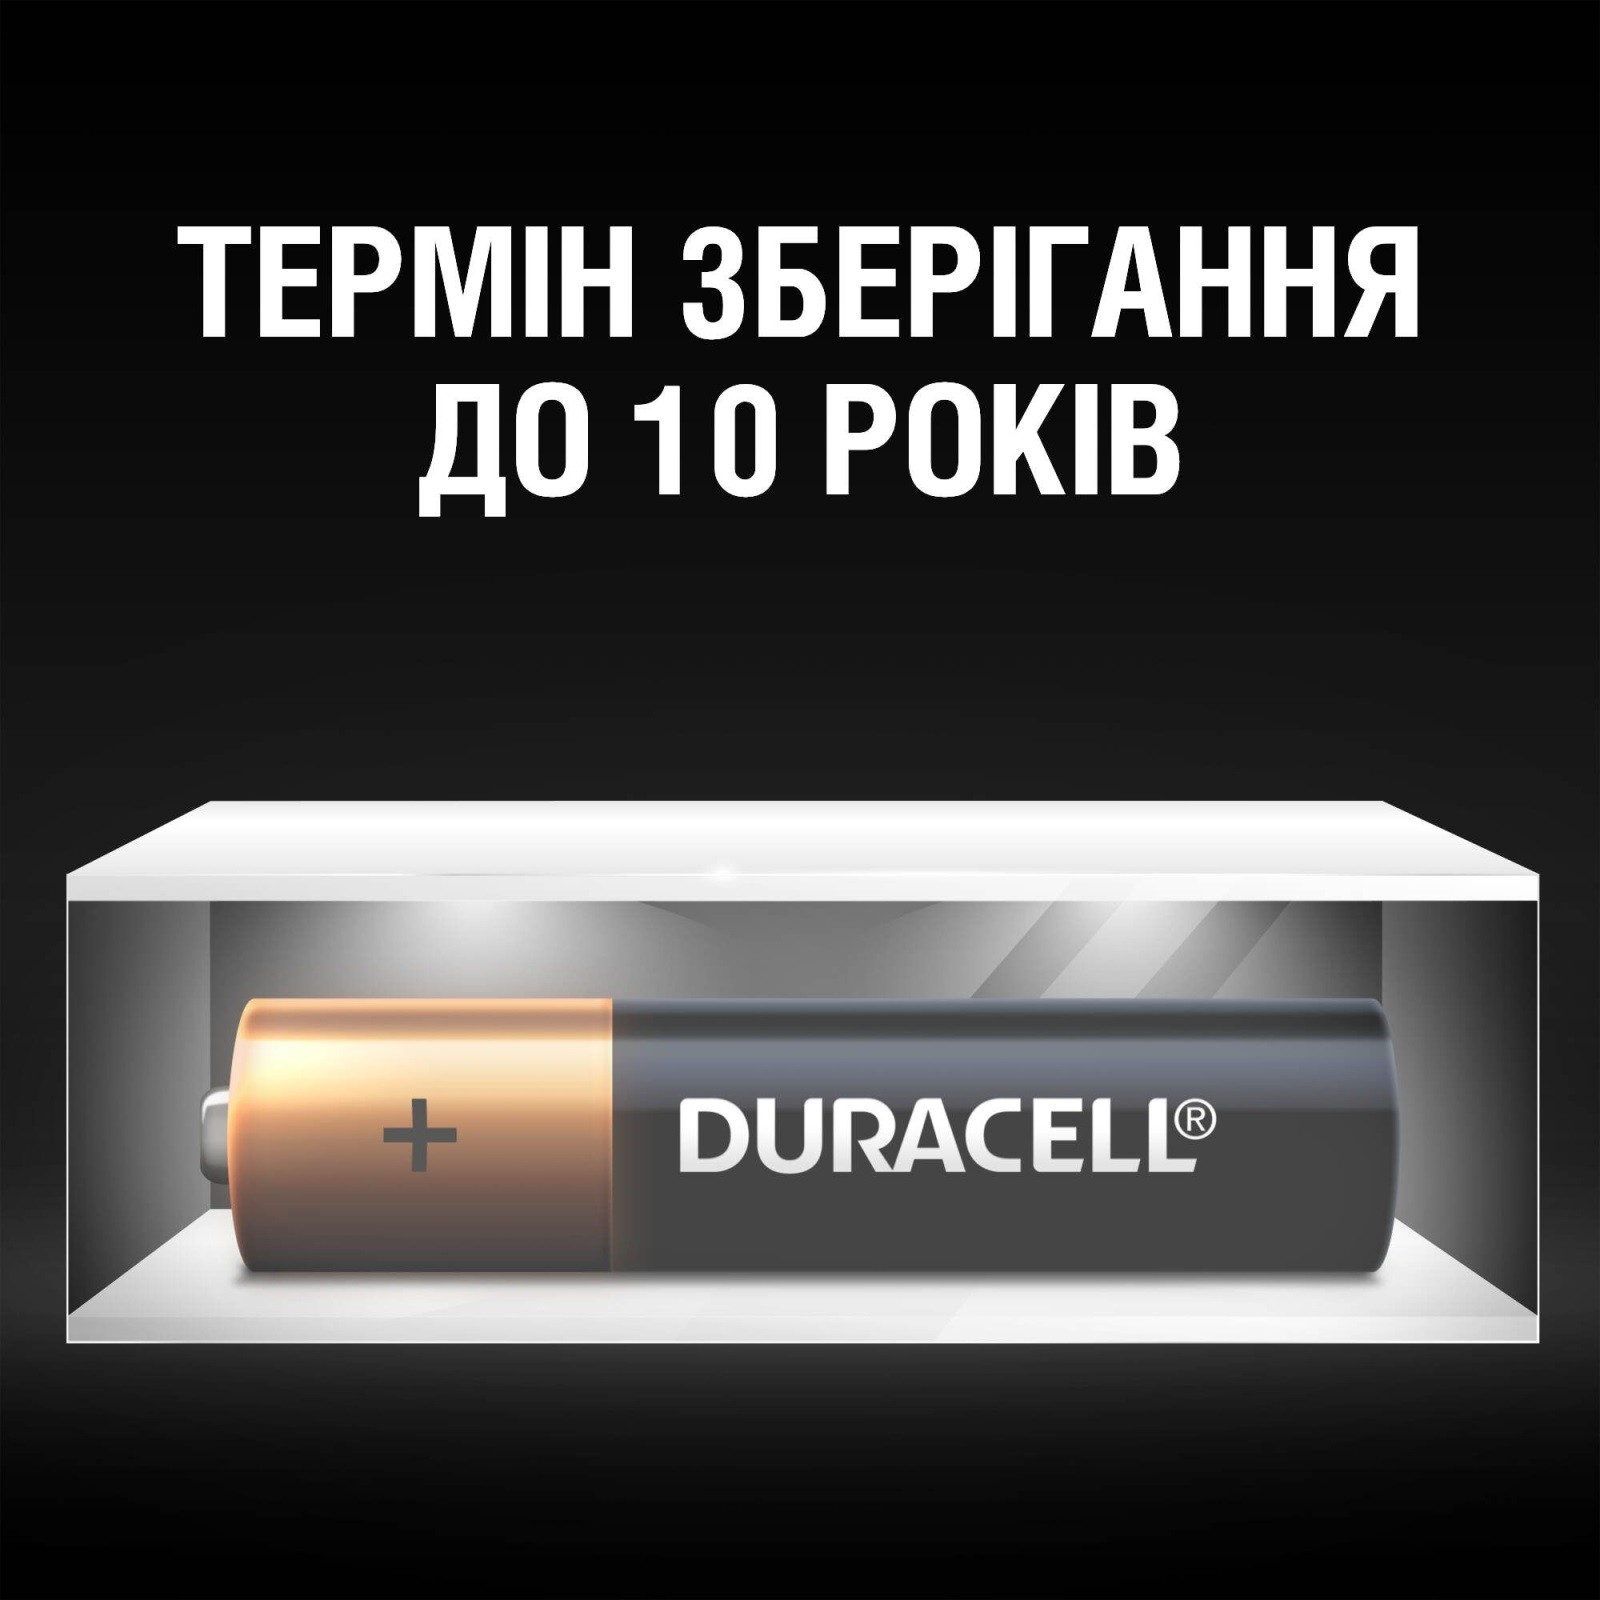 Батарейка Duracell Simply LR03 AAA 4 шт.(отрывной набор 4X4 шт.) отзывы - изображения 5